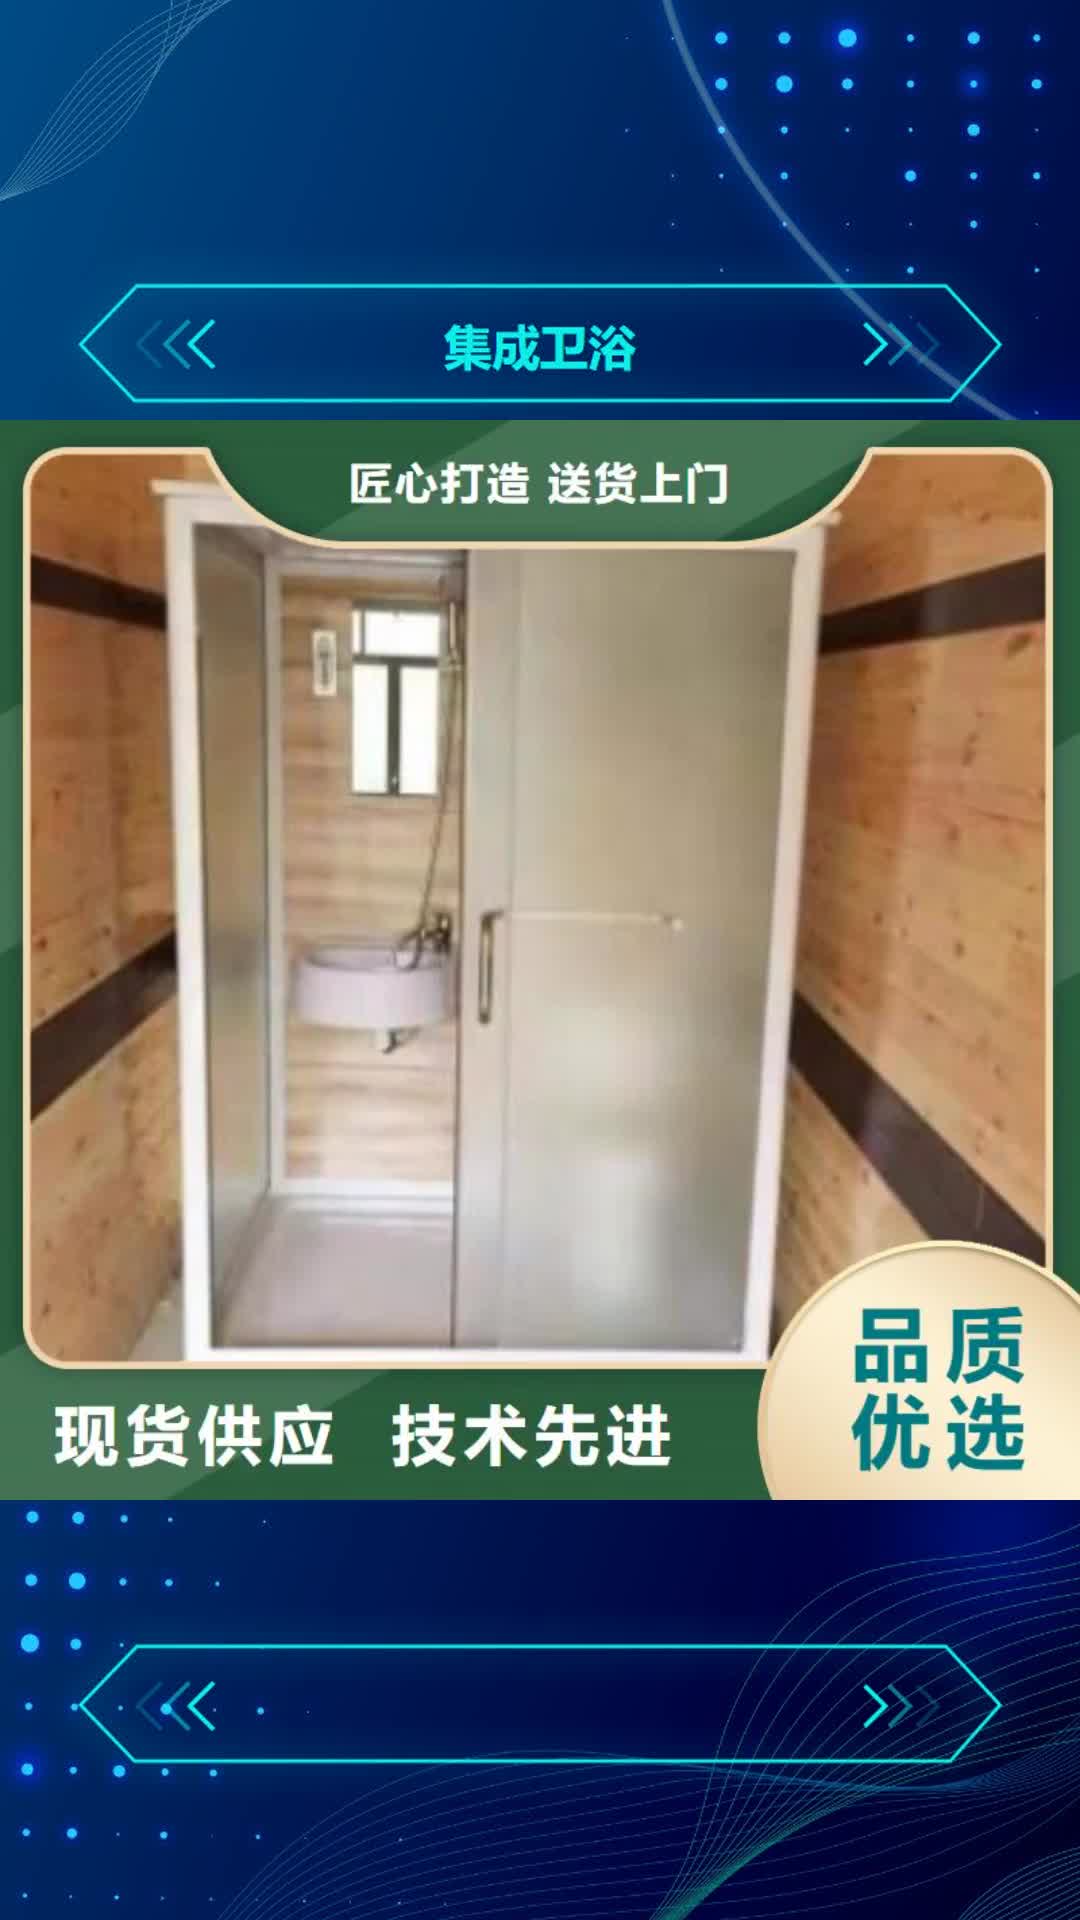 赣州集成卫浴整体淋浴房一站式厂家